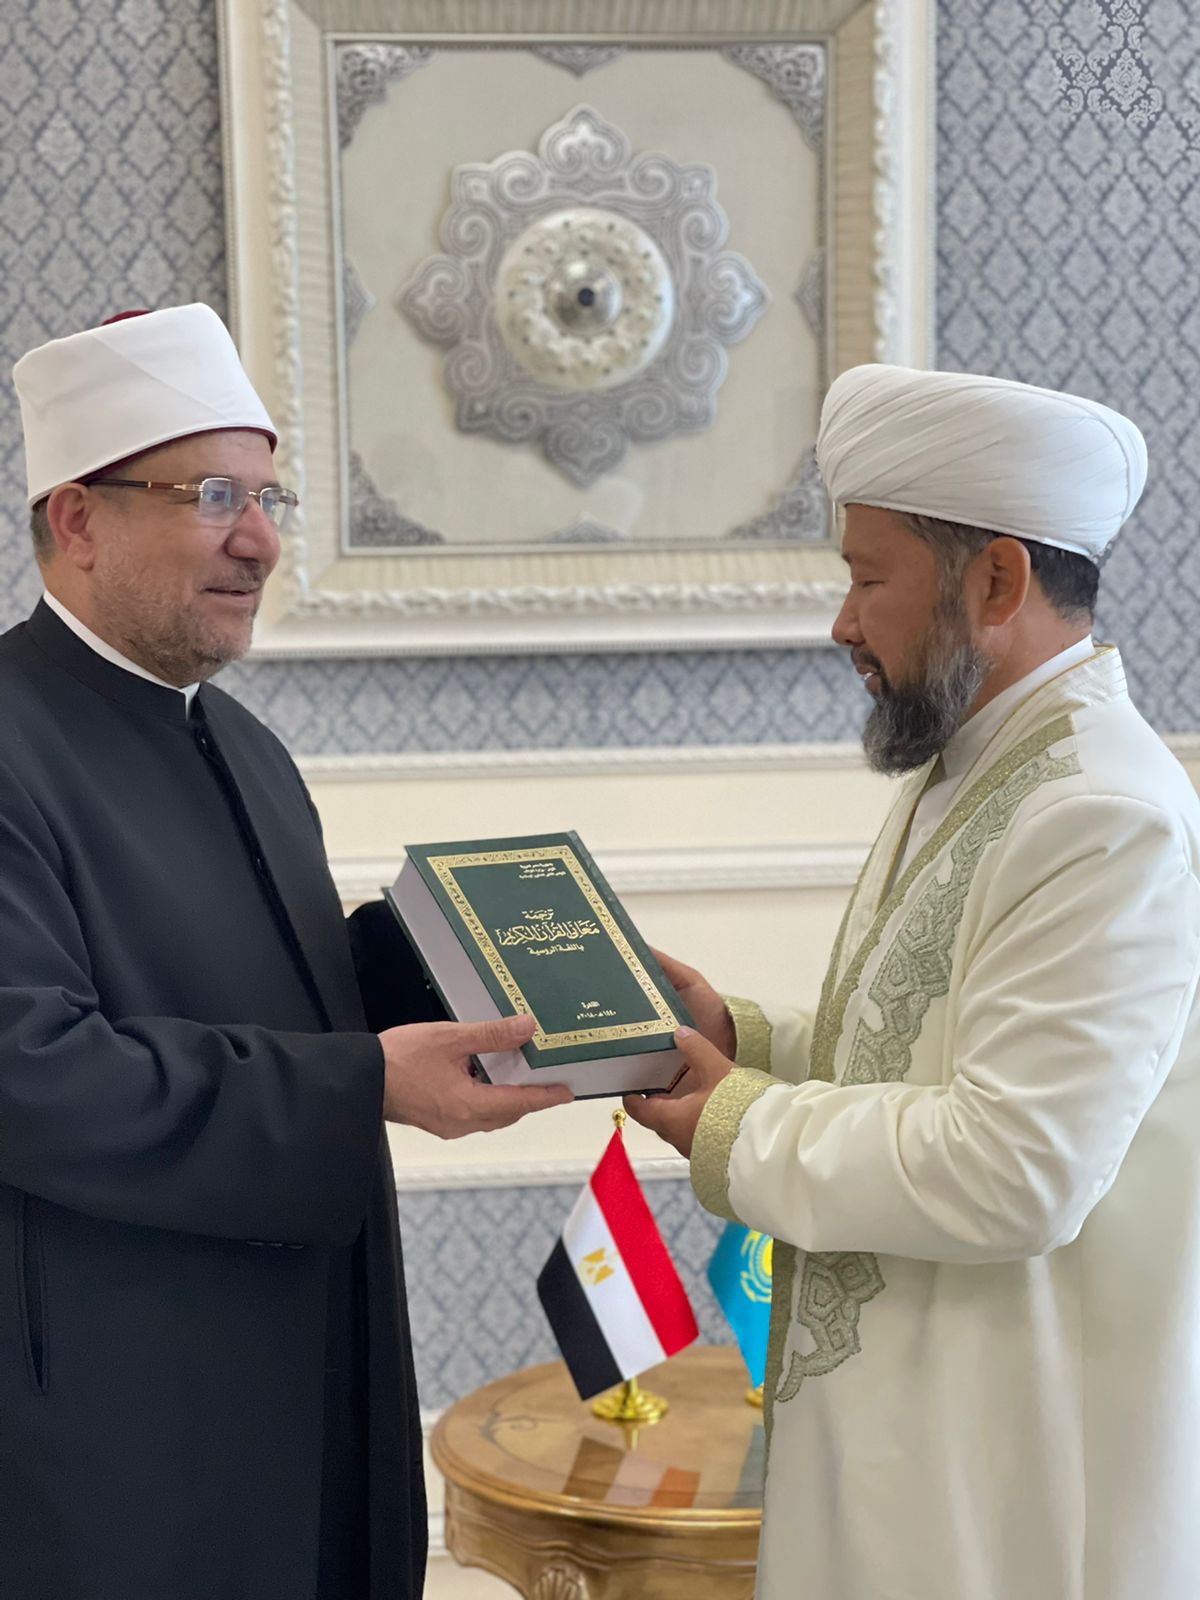 وزير الأوقاف يهدي مفتي كازاخستان نسخة من القرآن الكريم مترجما